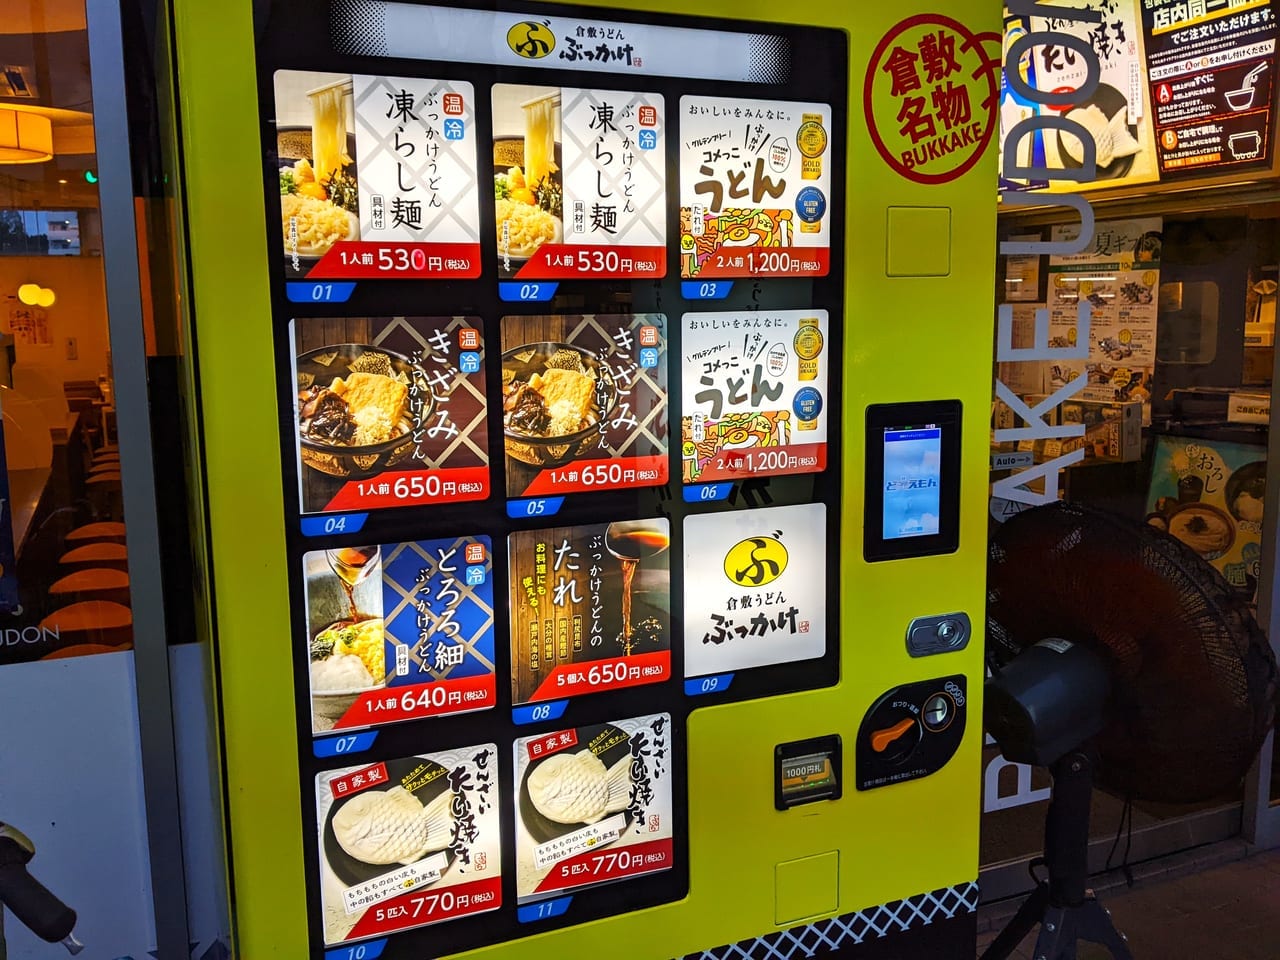 「ぶっかけふるいち岡山健幸プラザ店」の冷凍自販機